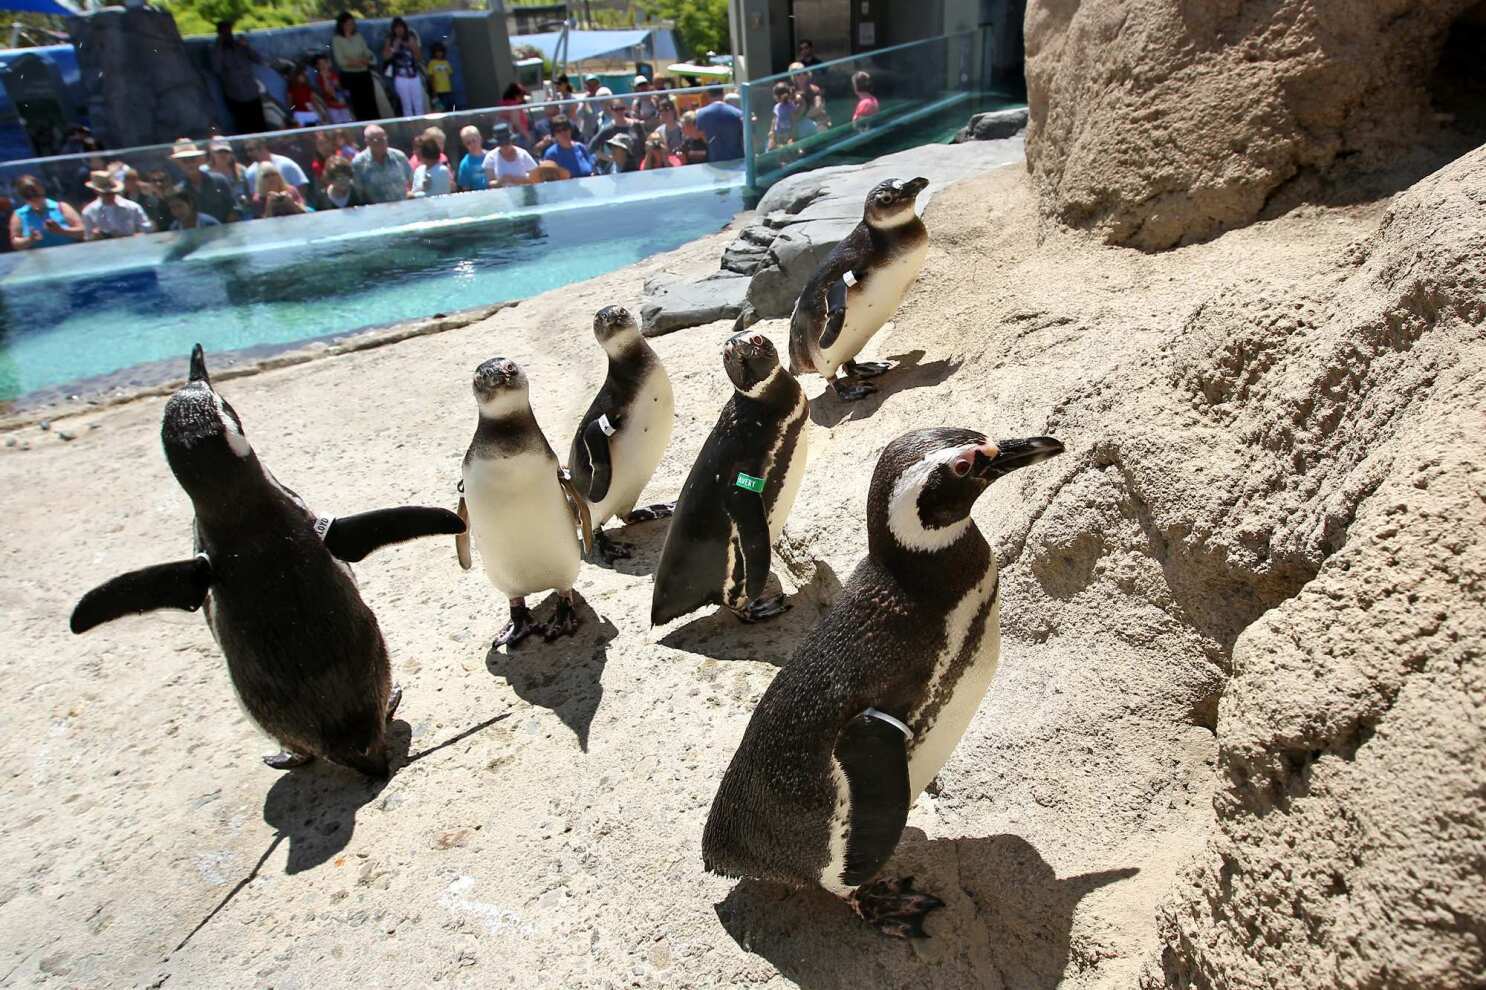 New penguin exhibit at Aquarium of the Pacific - Los Angeles Times